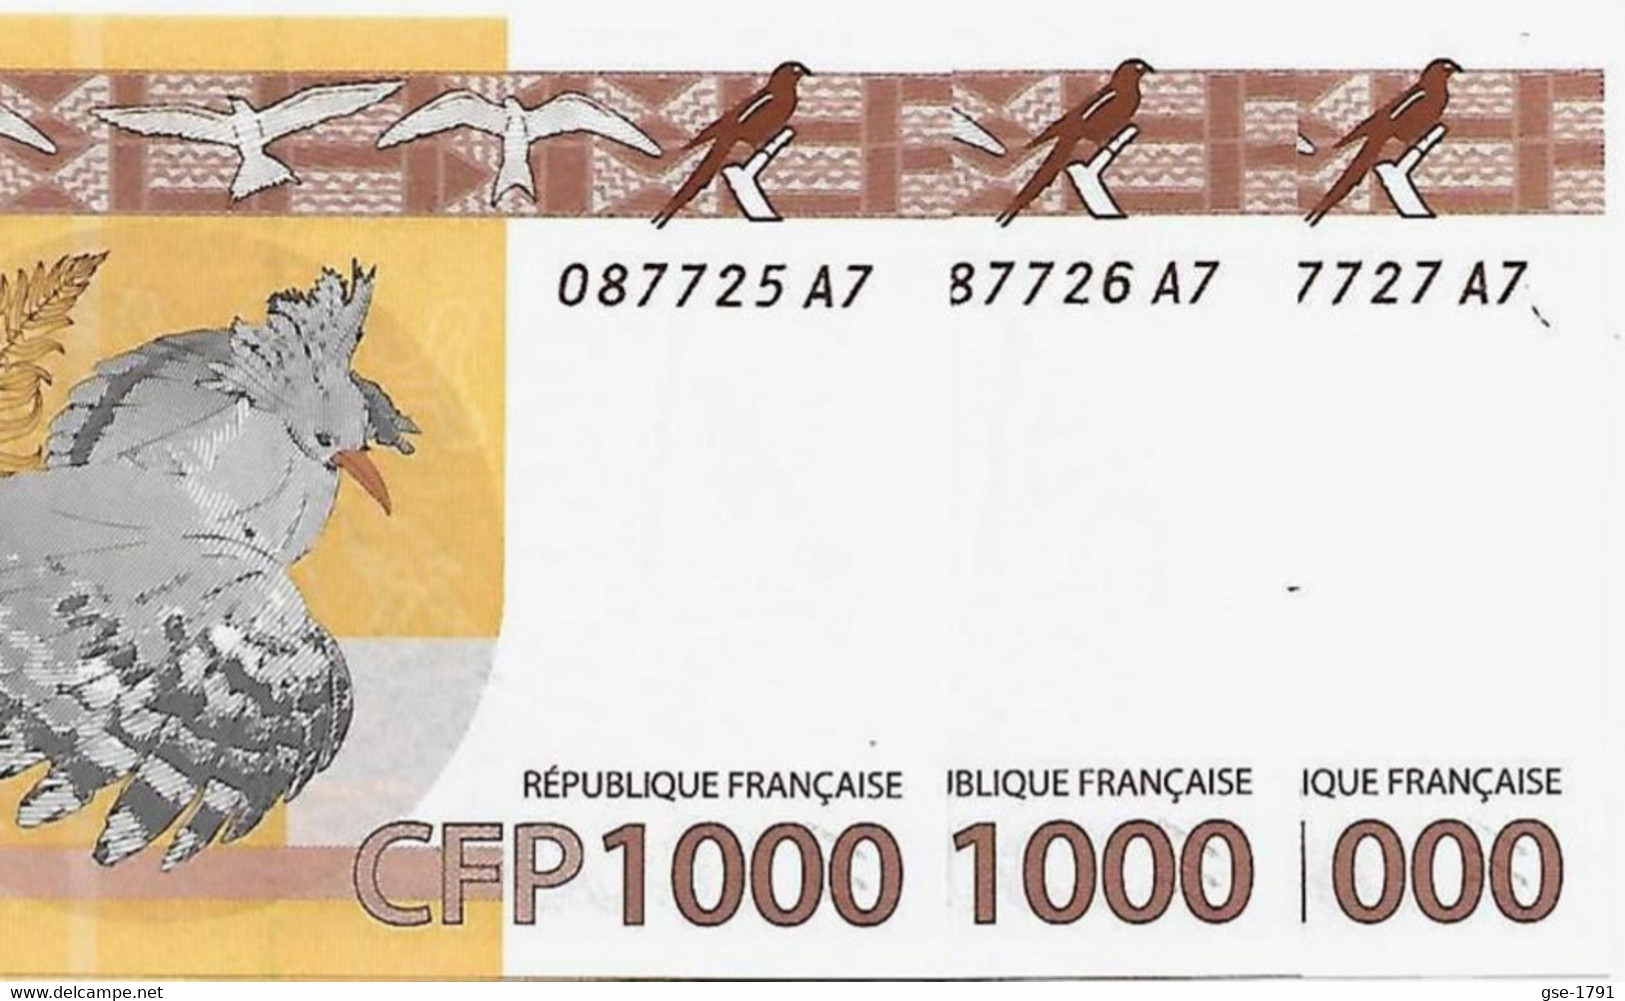 IEOM : Nlle CALEDONIE, TAHITI ,WALLIS  Nouveaux  Billets De 100 Francs 2014 Lot De3  NEUFS - French Pacific Territories (1992-...)